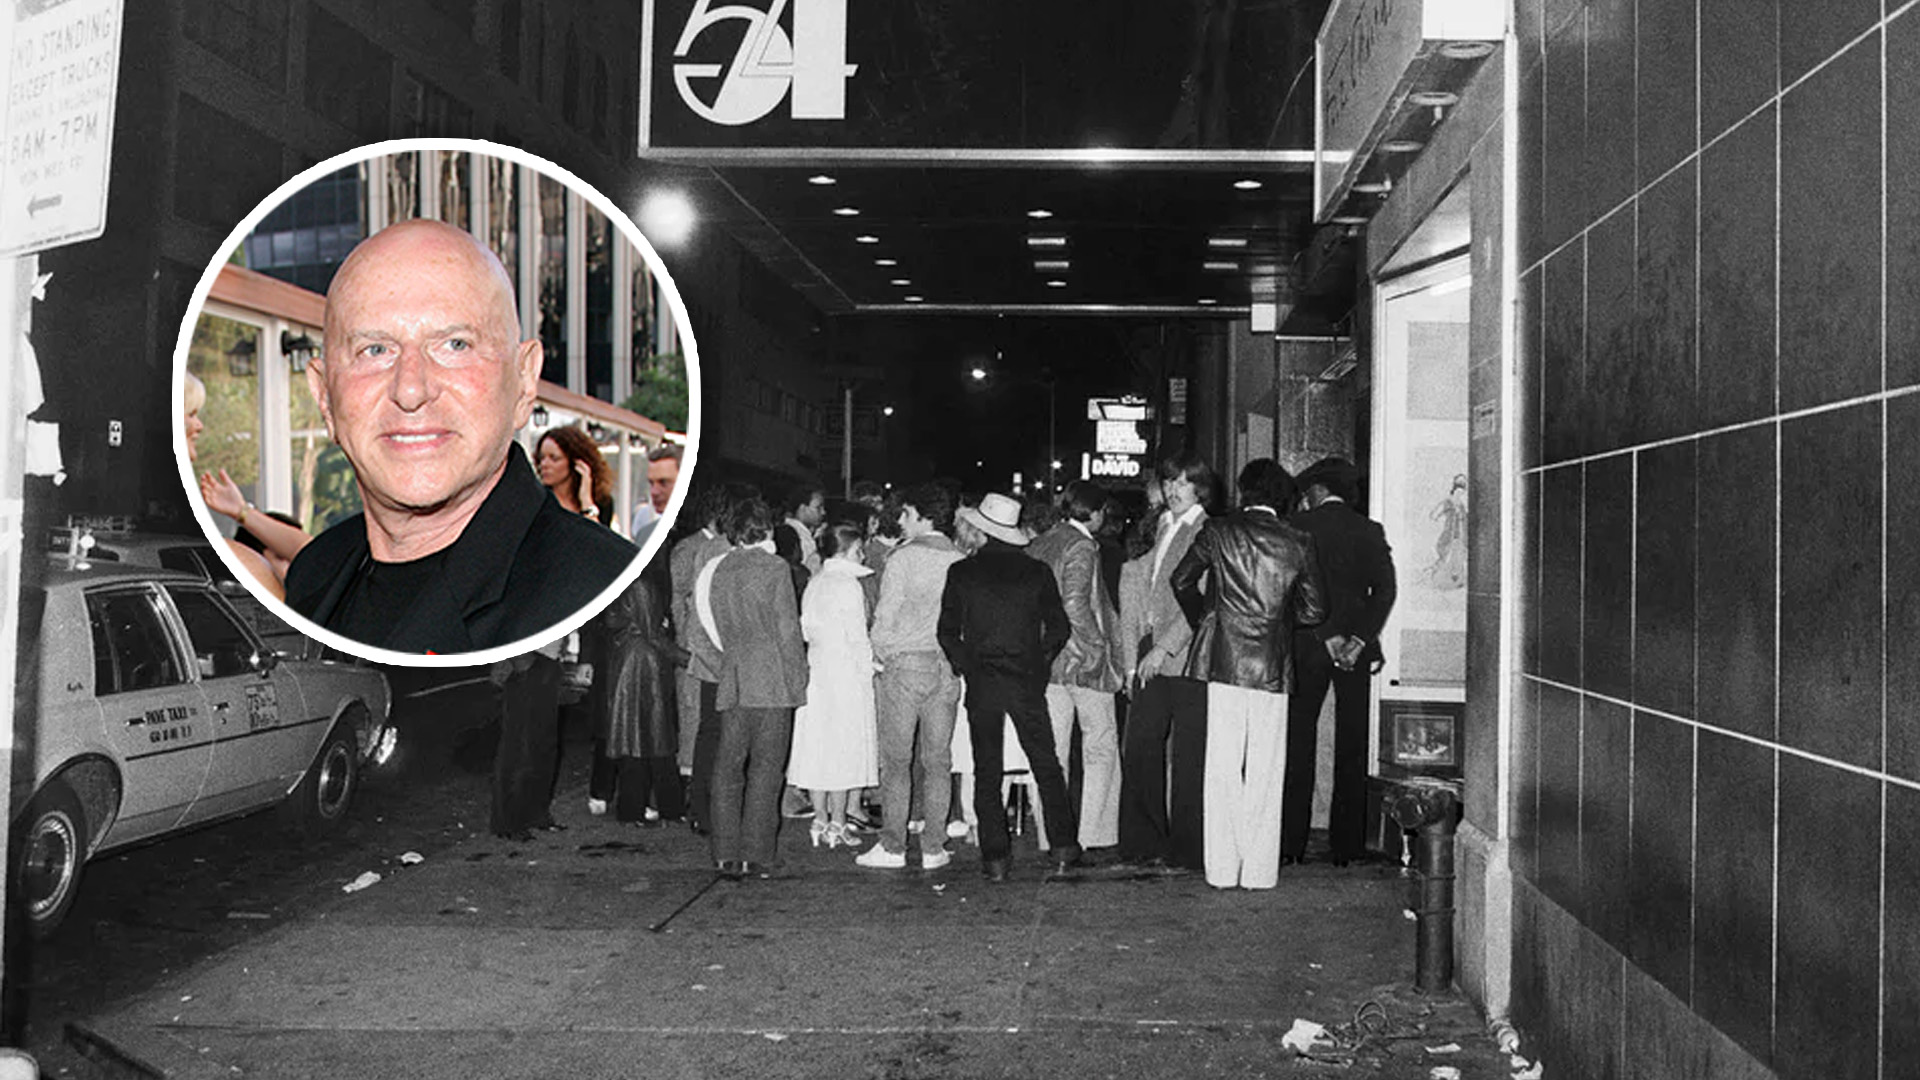 La impactante revelación de Mark Fleischman, el dueño de la mítica discoteca Studio 54 de Nueva York: “Voy a terminar mi vida con un suicidio”